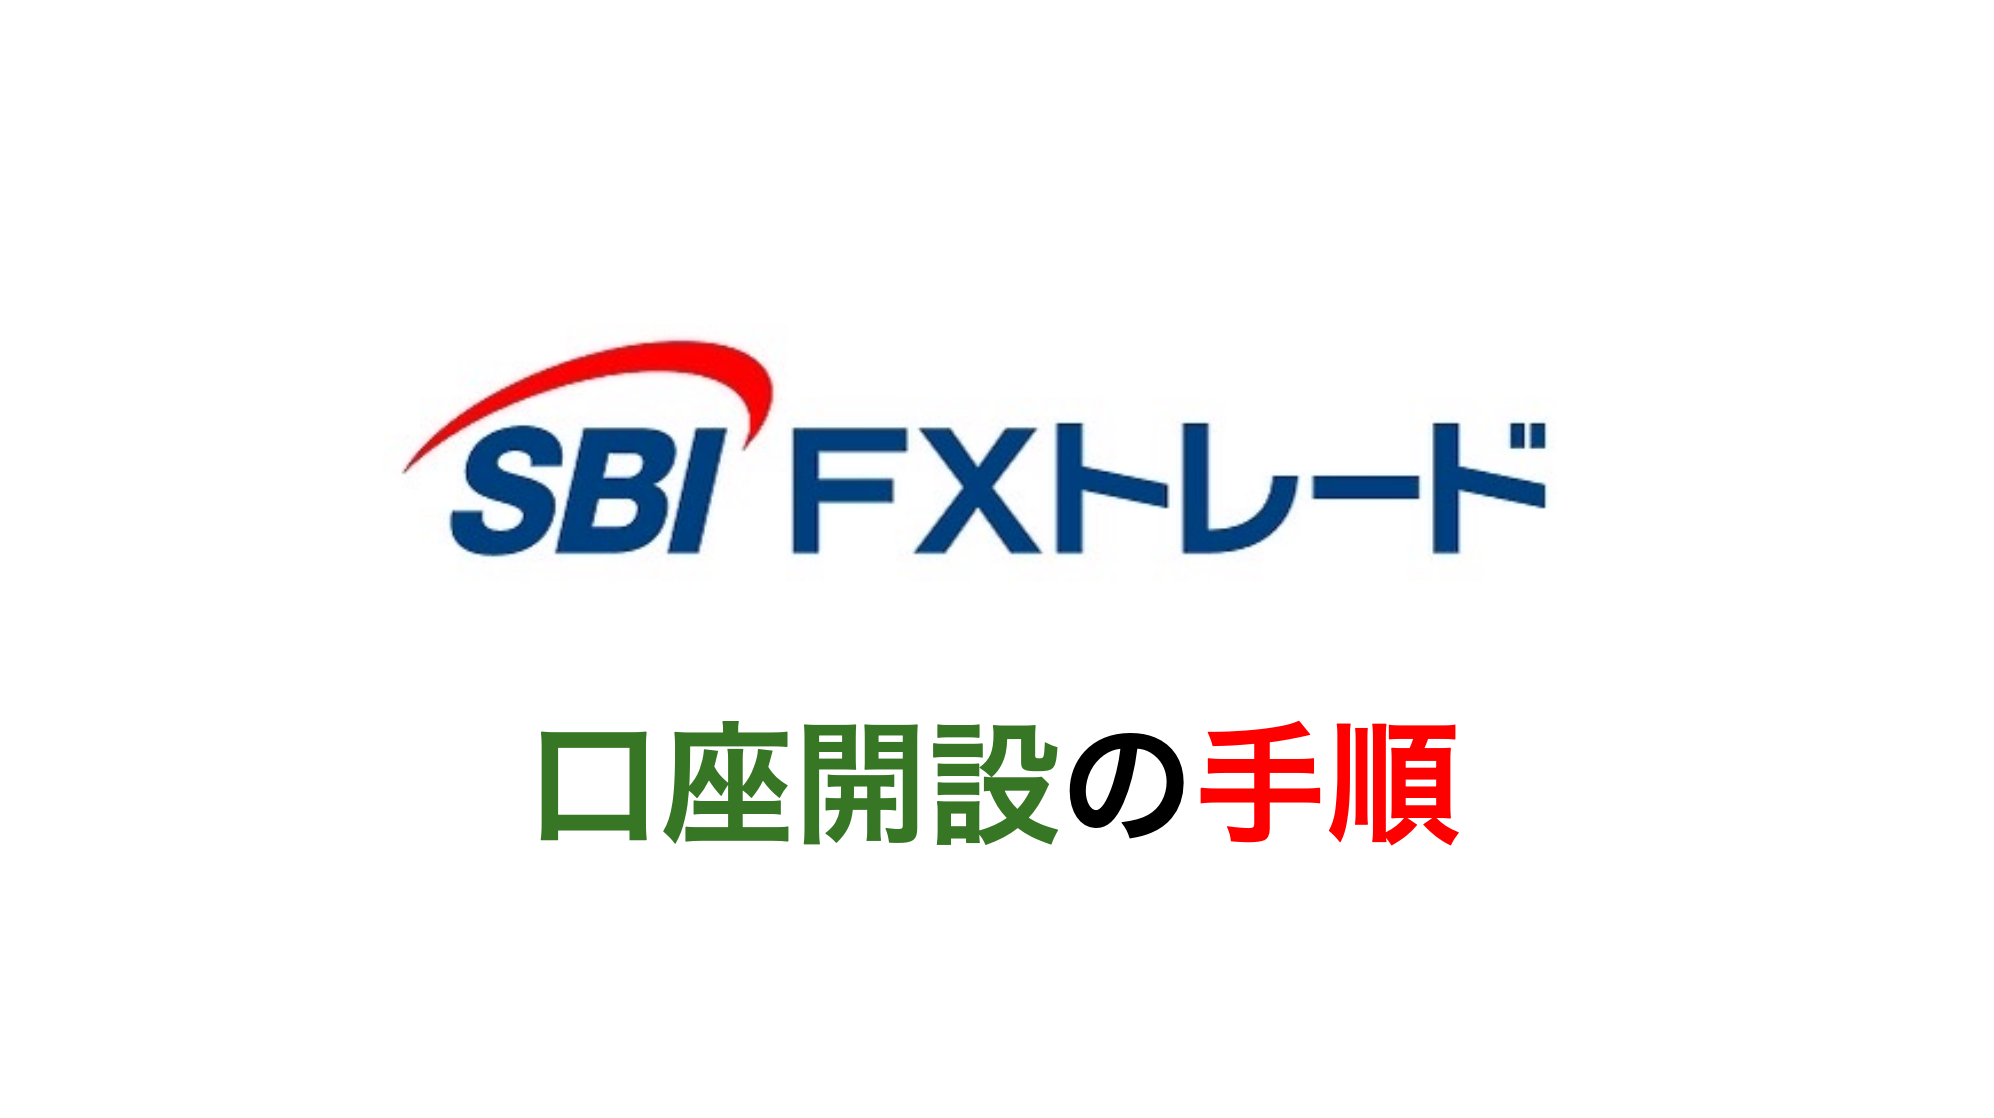 SBI FXトレード 口座開設